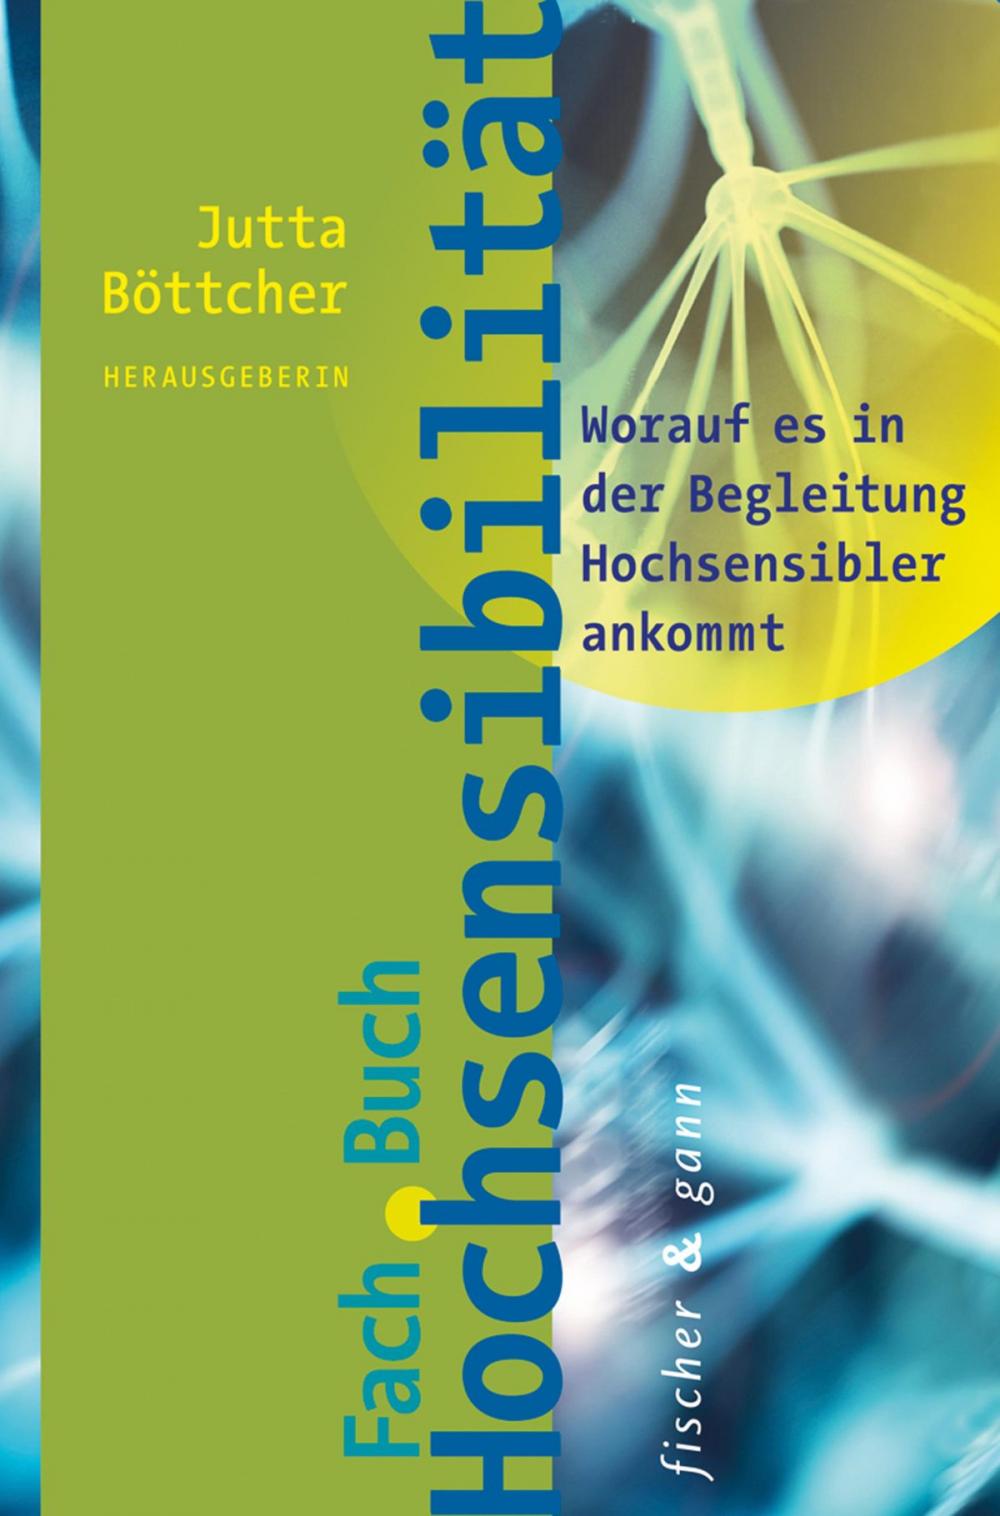 Big bigCover of Fachbuch Hochsensibilität